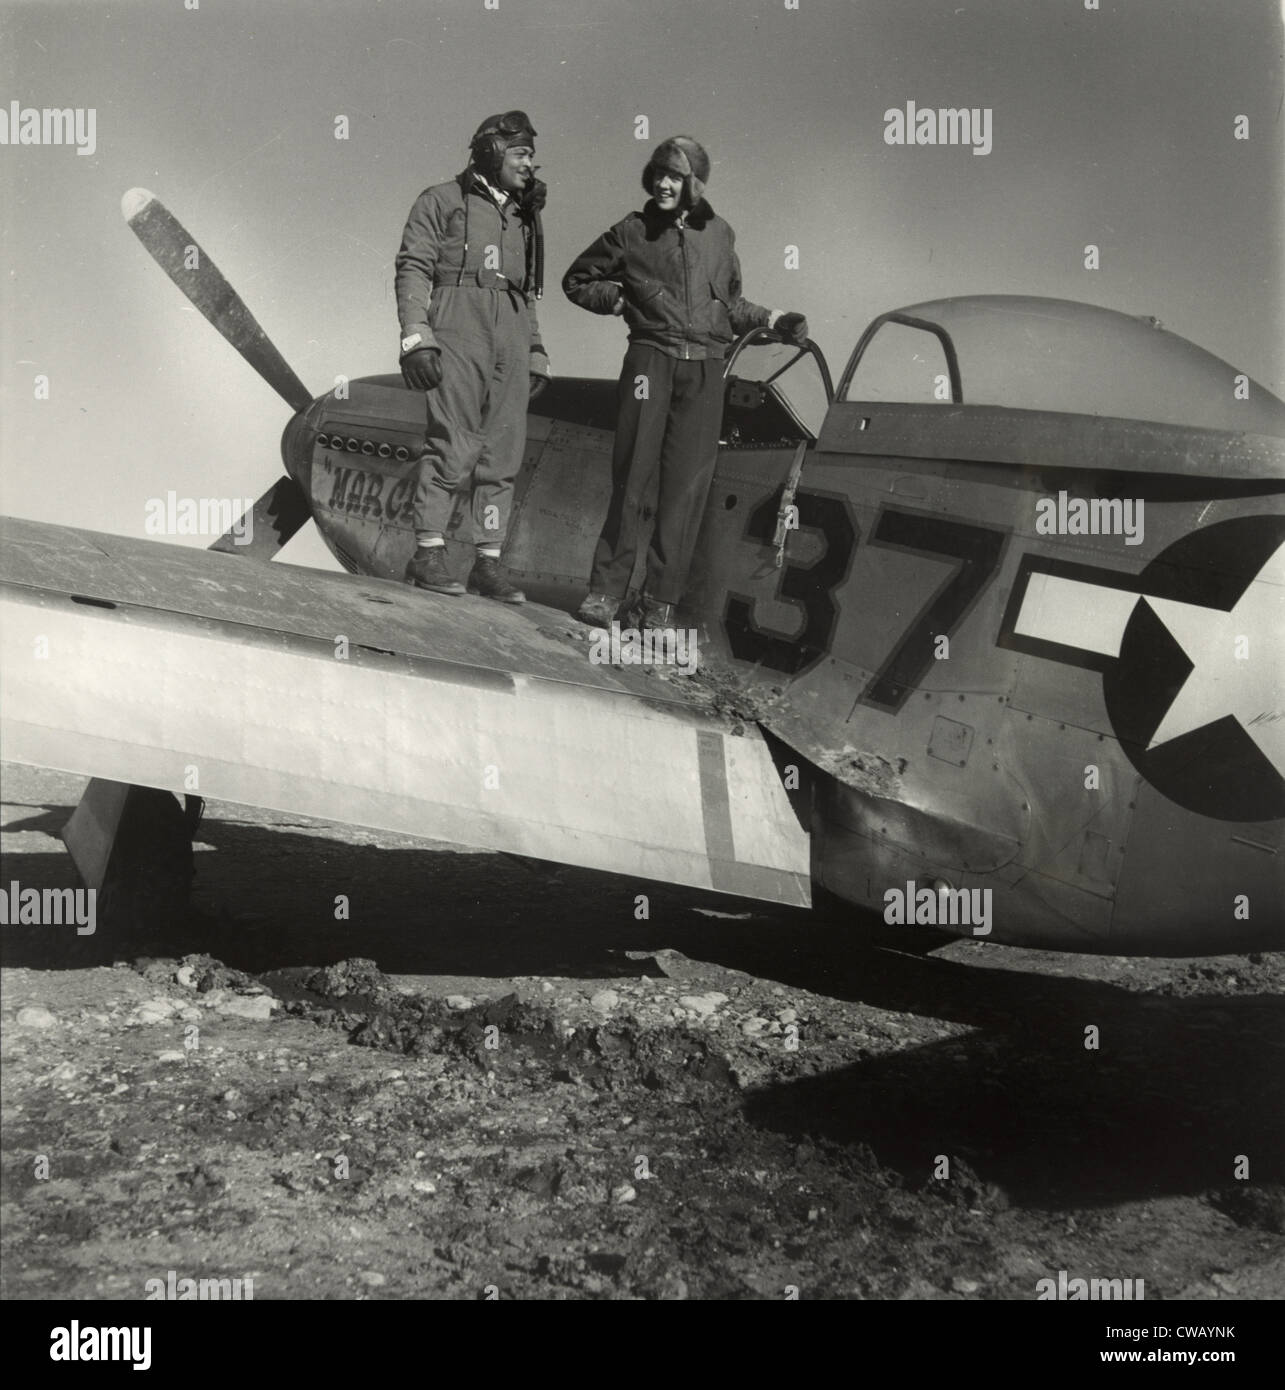 Stellvertretenden Gruppenkommandanten George S. "Spanky" Roberts, Fotograf Toni Frissell, auf einer P-5/D Flugzeug benannt Huckepack, Foto von Stockfoto